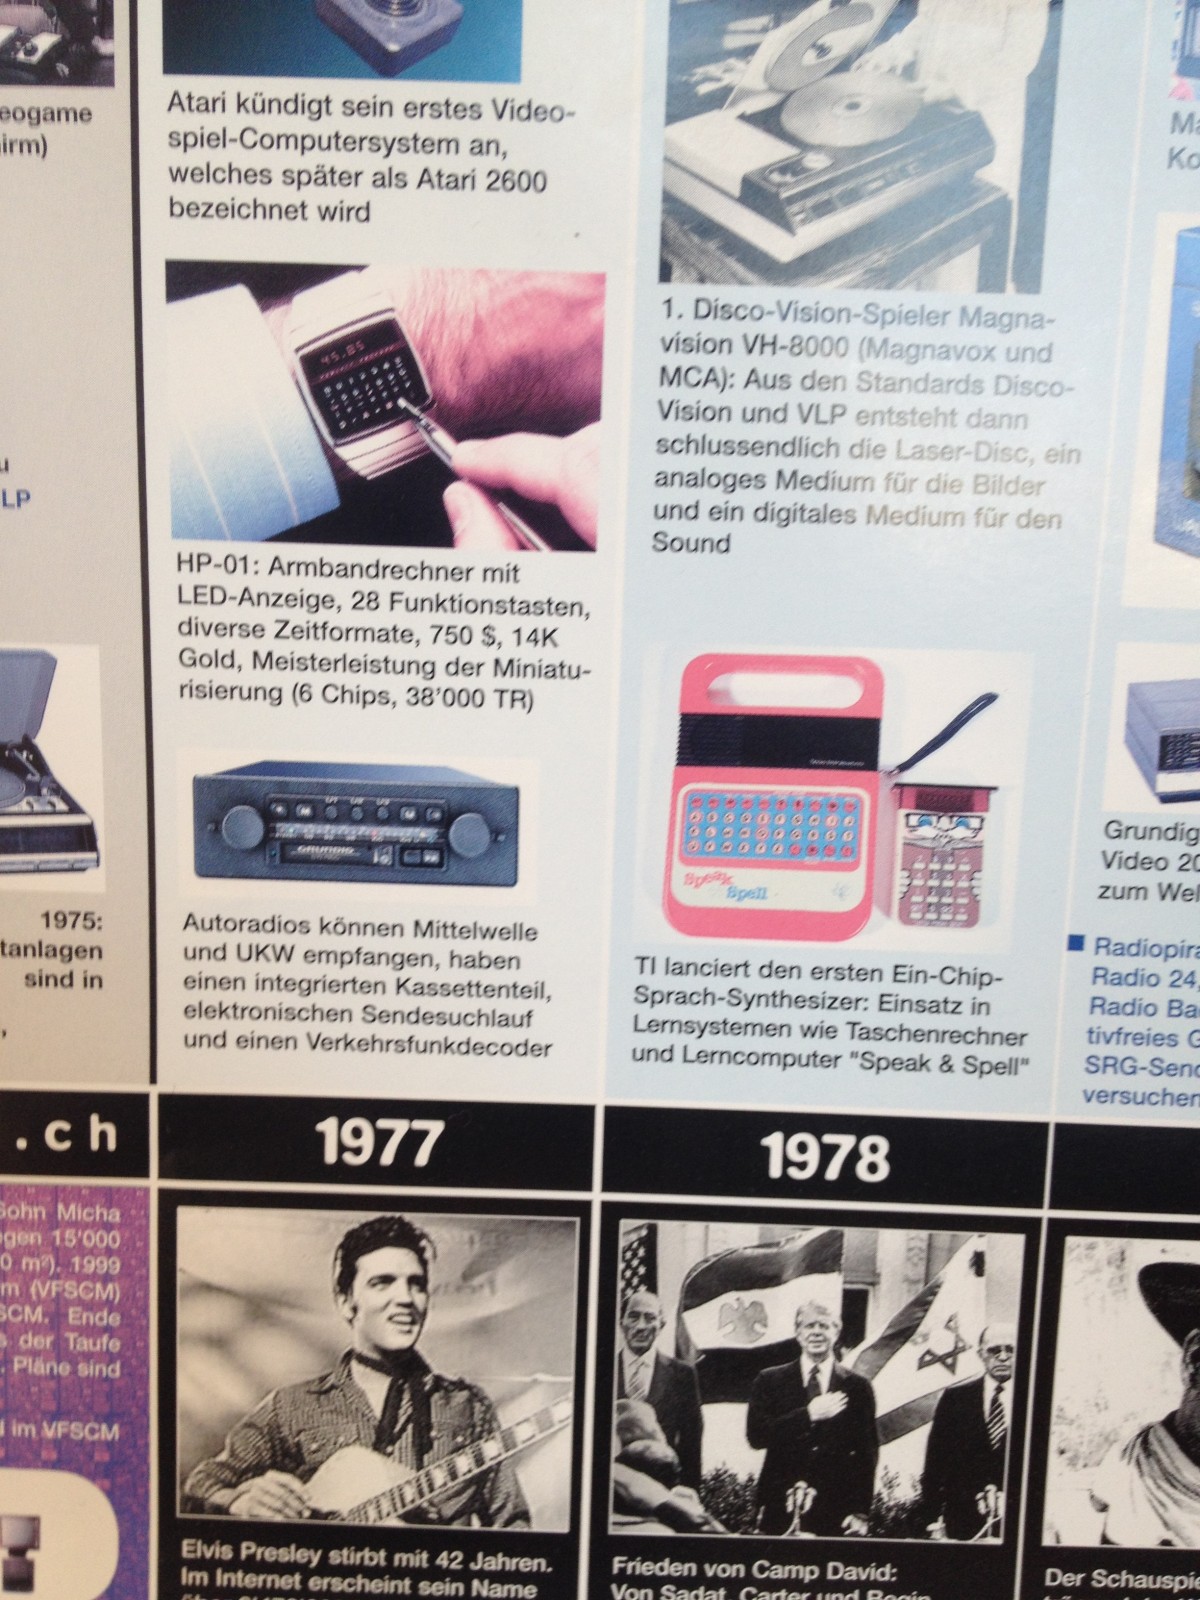 1977 als Elvis Presley starb, lancierte HP bereits eine Smartwatch und ist wohl erster Wegbereiter für die smarte Uhr von Apple. 1978 lanciert Texas Instruments die ersten Lerncomputer zu einer Zeit, in der der Friedensvertrag in Camp David unterzeichnet wird.